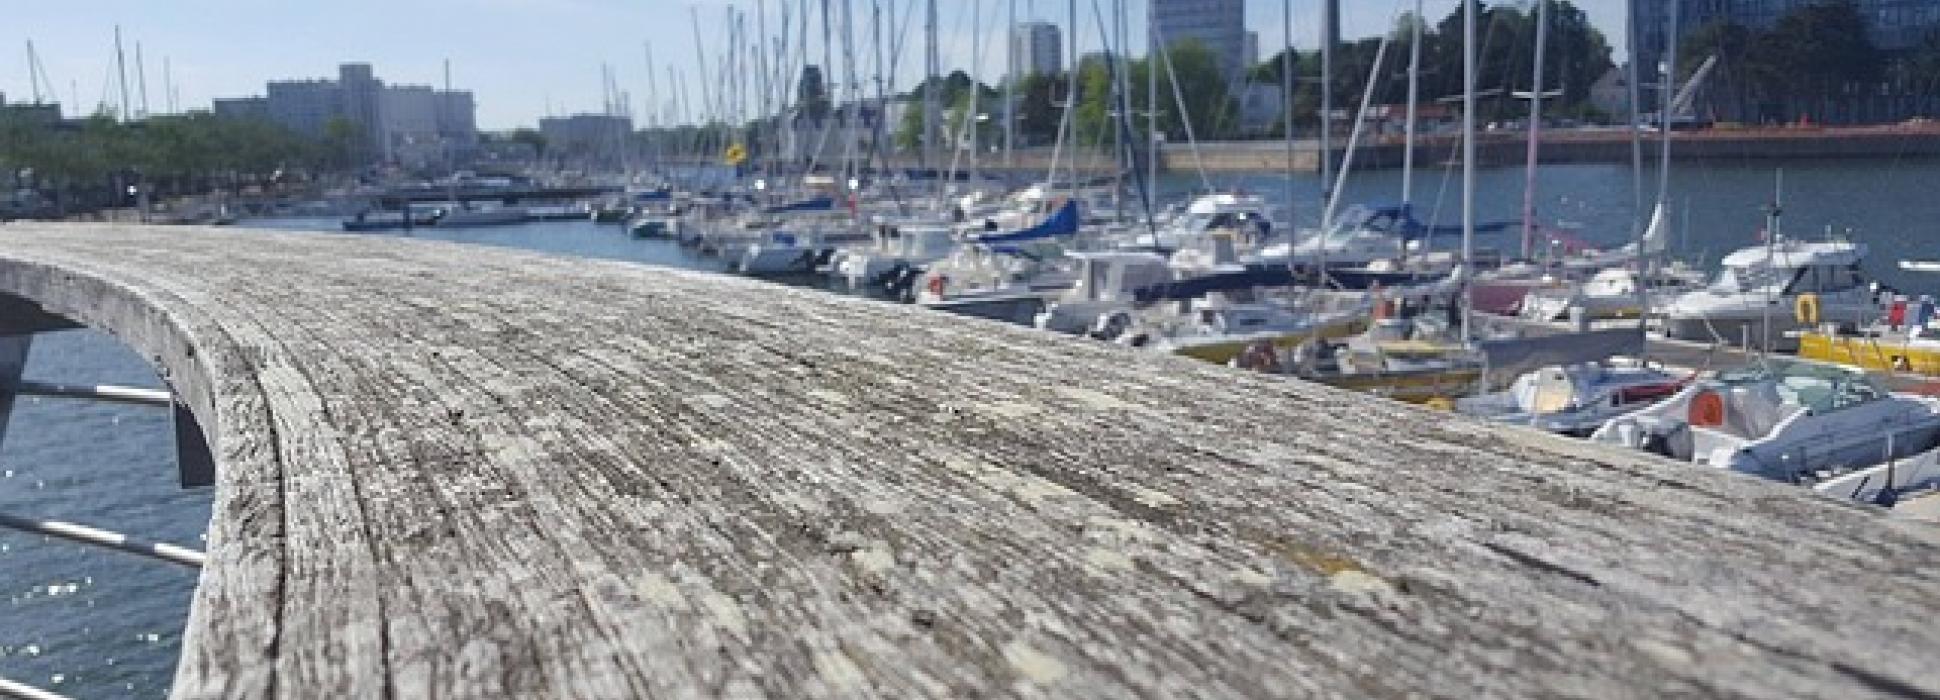 10 bonnes raisons d’aller à Lorient dans le Morbihan